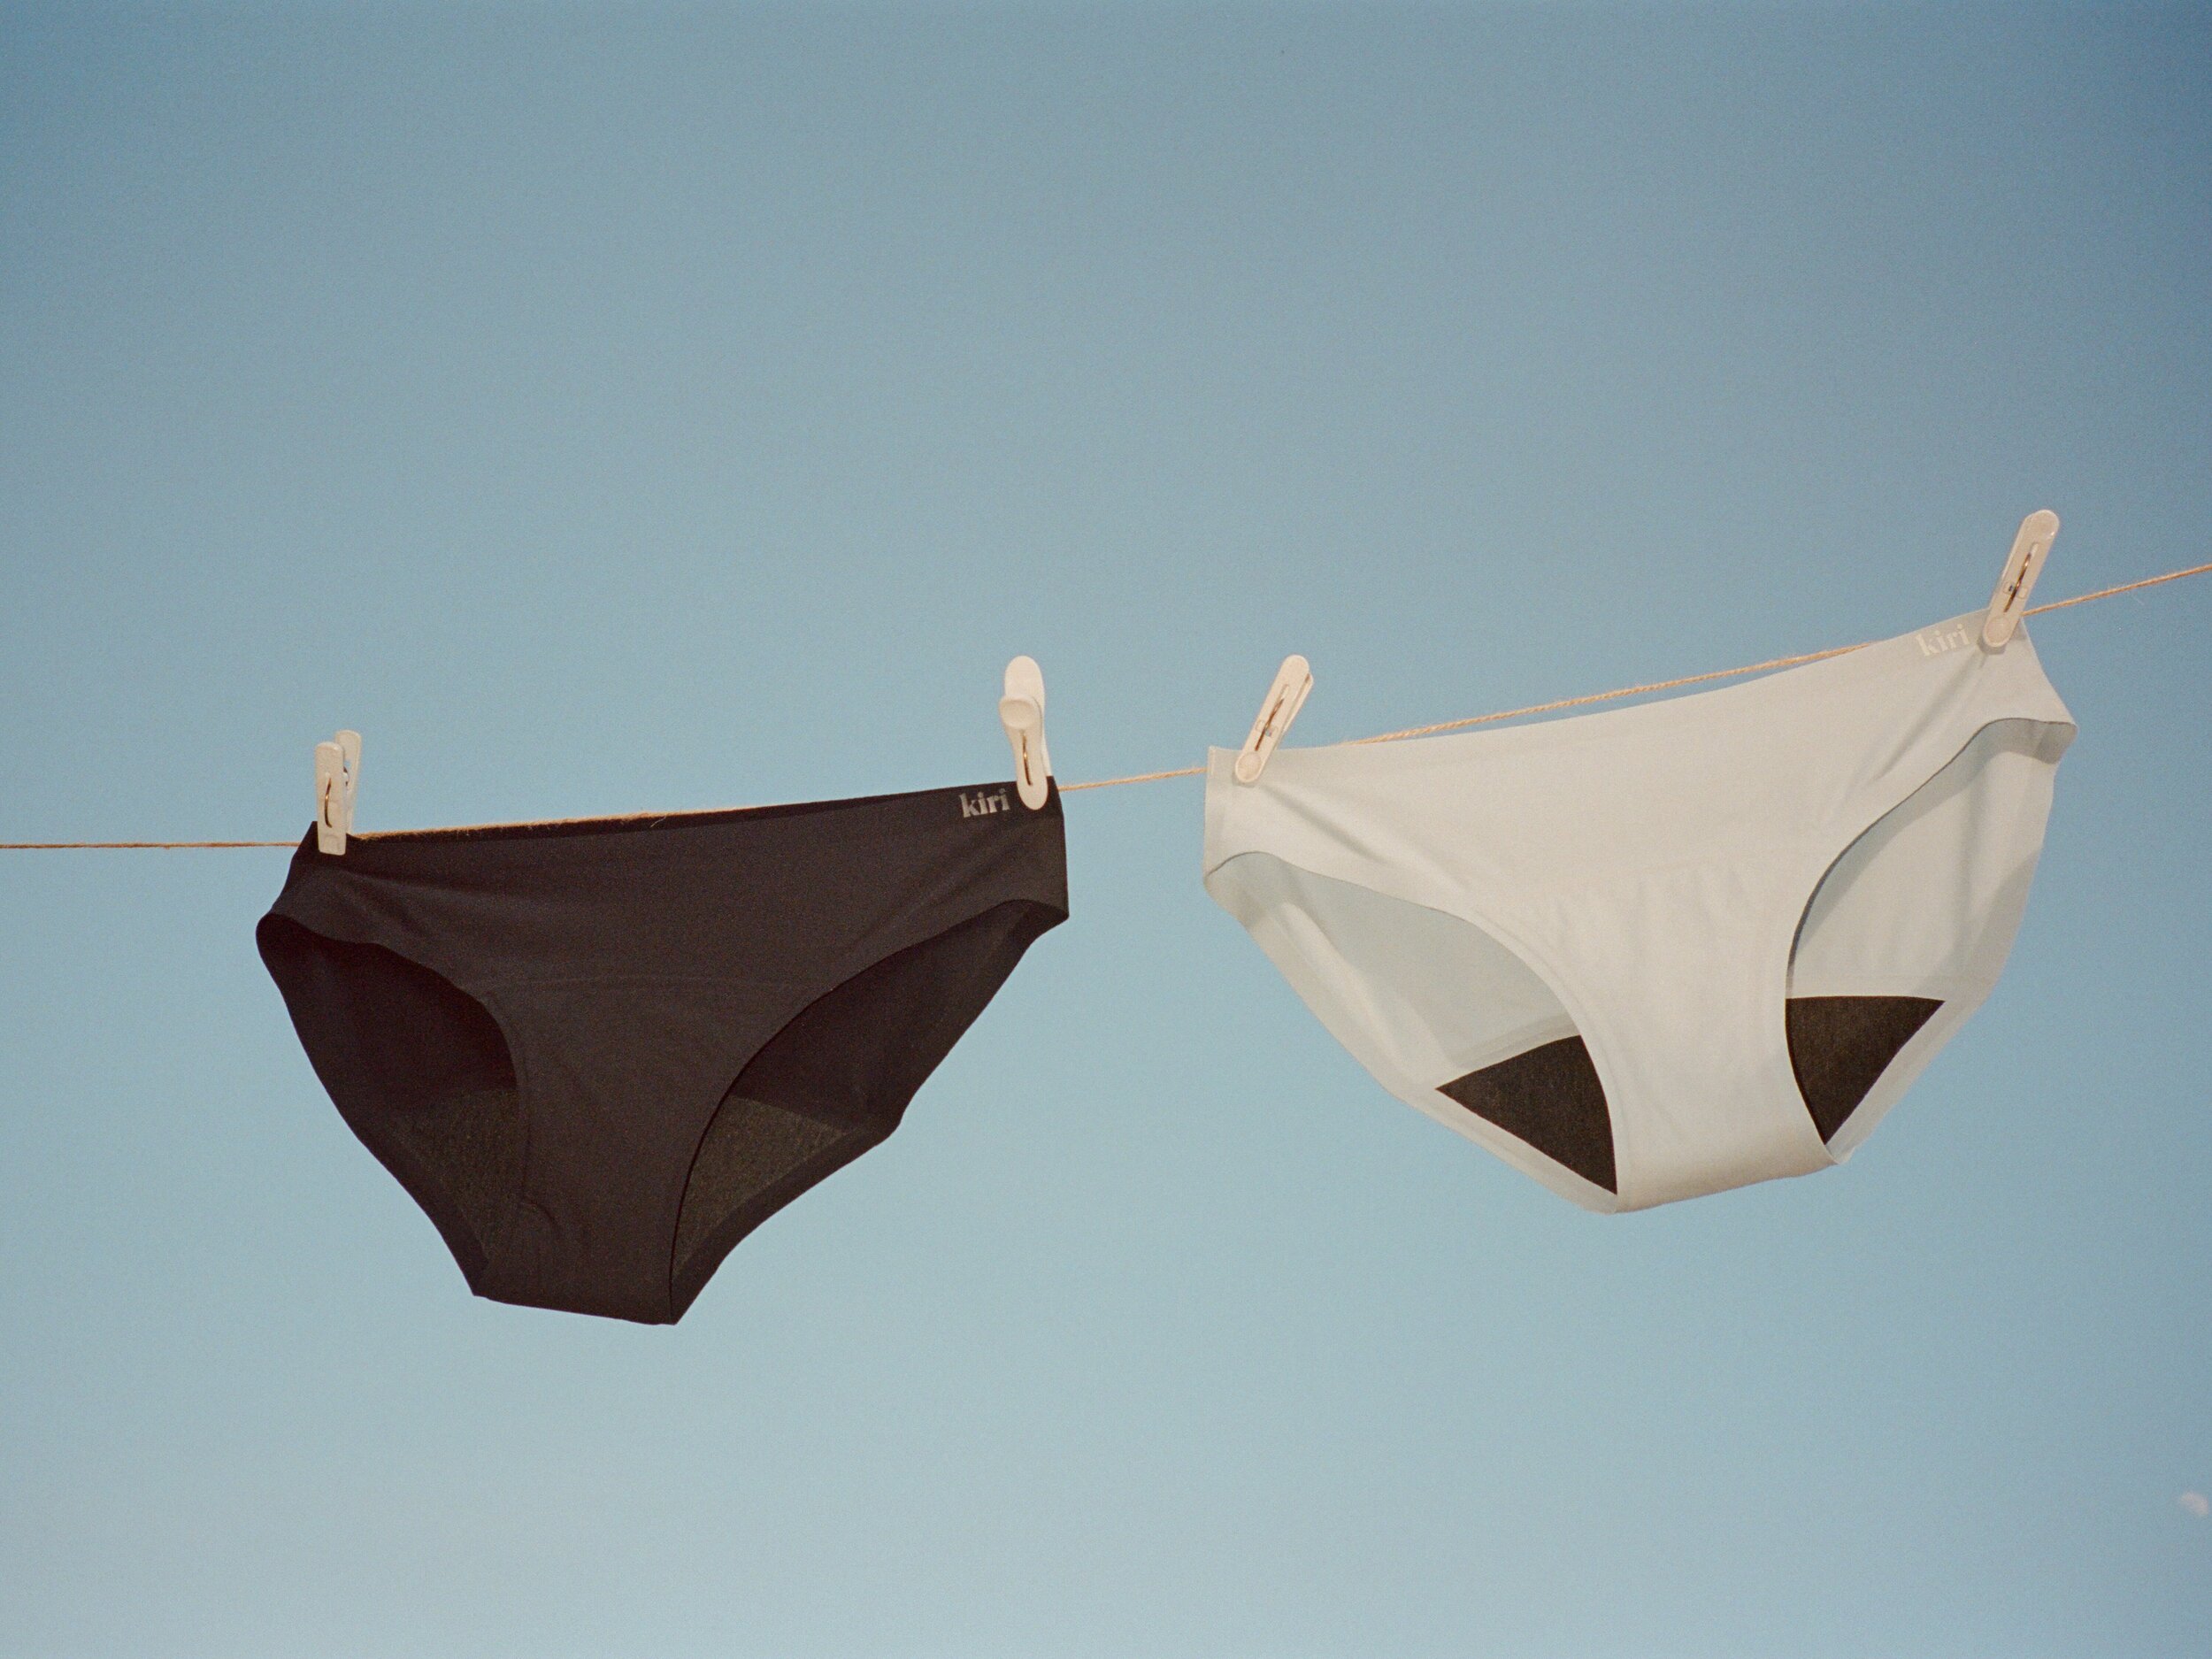 Meet kiri, the Sustainable Underwear Line Preventing Period Leaks